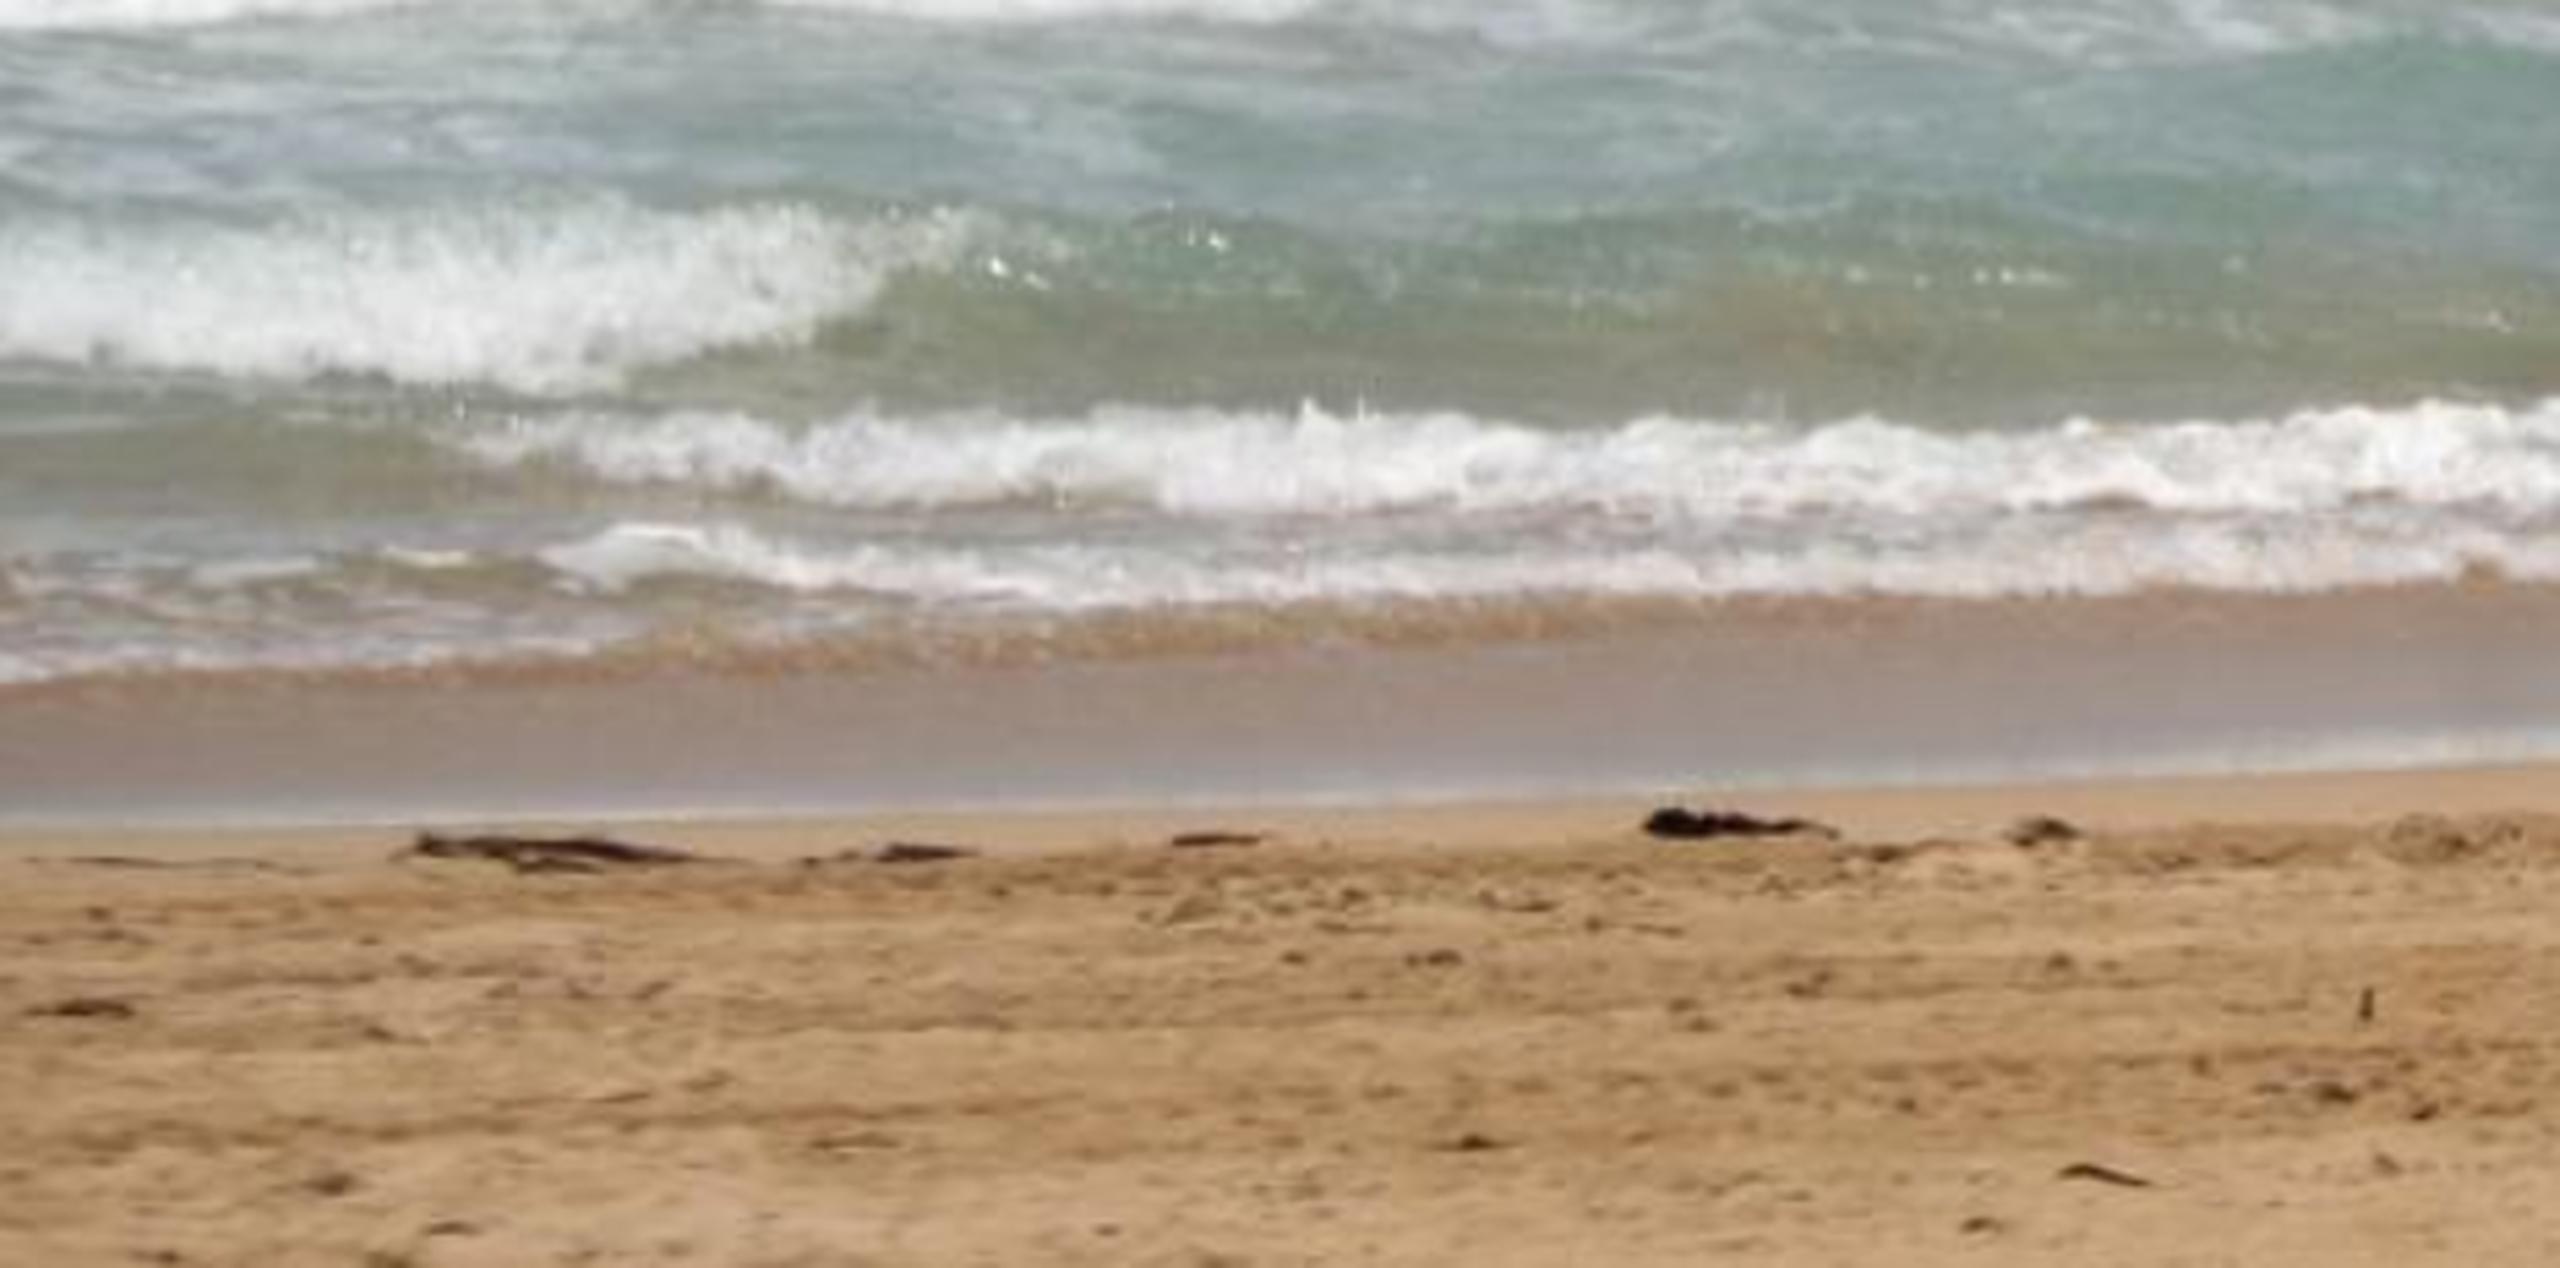 El ahogamiento ocurrió en una playa del Barrio Puntas de Rincón. (Archivo)